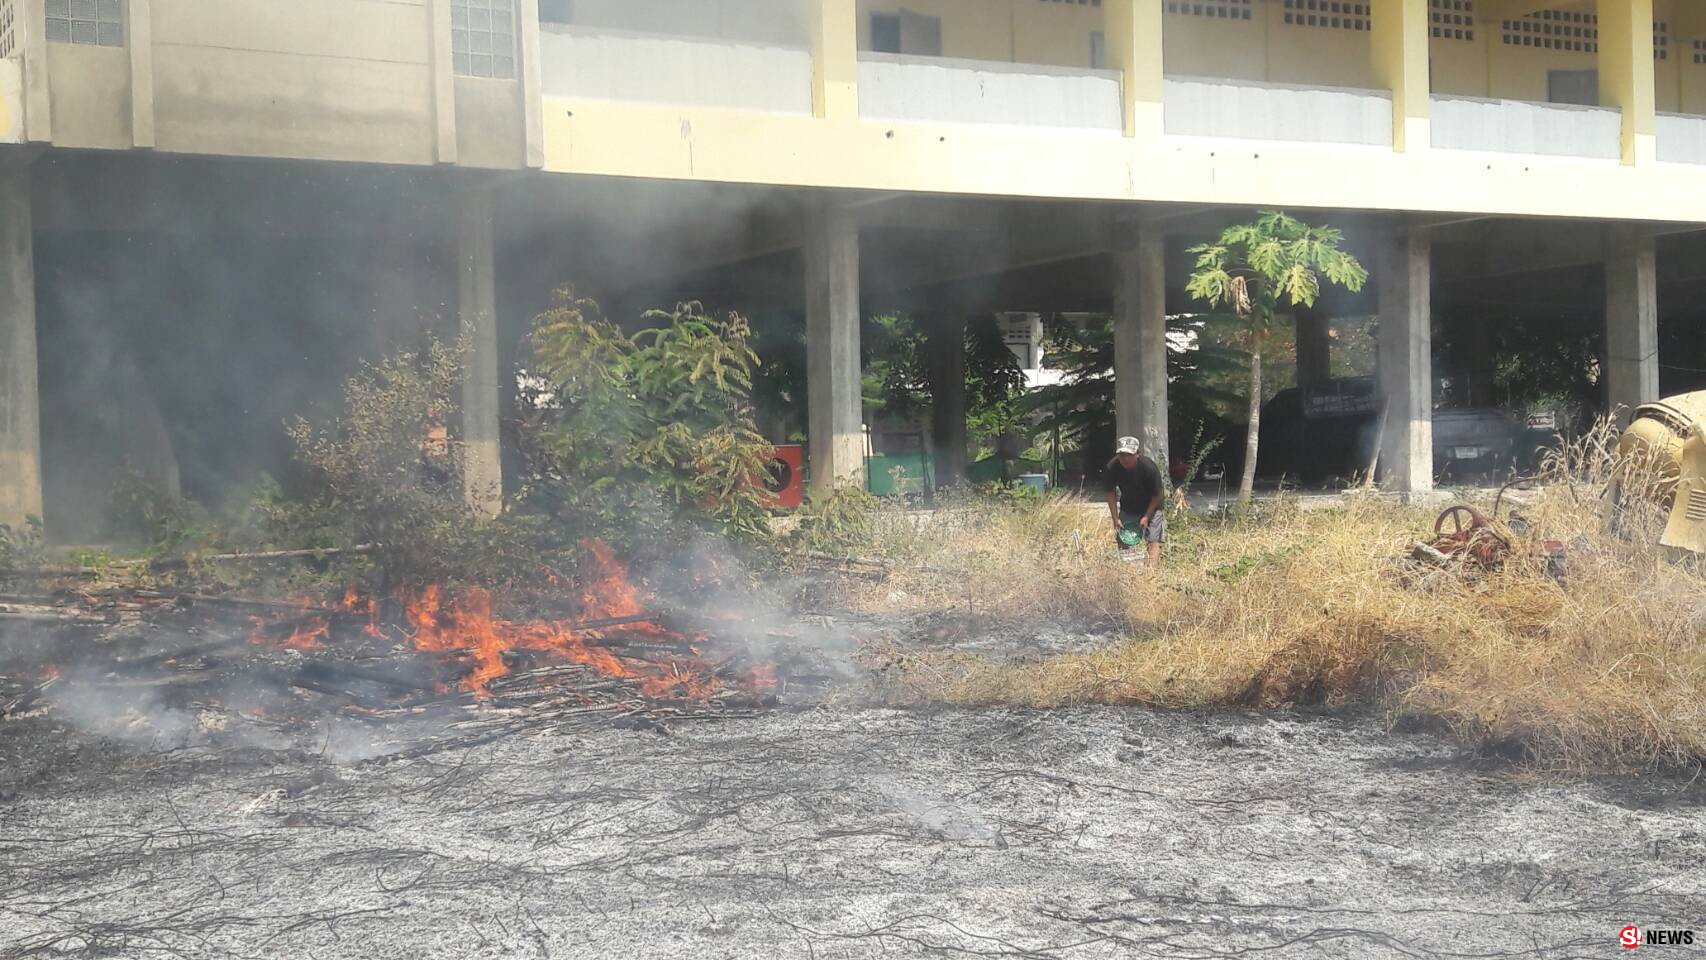 โคราช-โคราชไฟไหม้หญ้าข้างโรงเรียน ระดมรถดับเพลิงเร่งฉีดสกัด หวั่นกระทบครู นักเรียนที่กำลังเรียนหนังสืออยู่